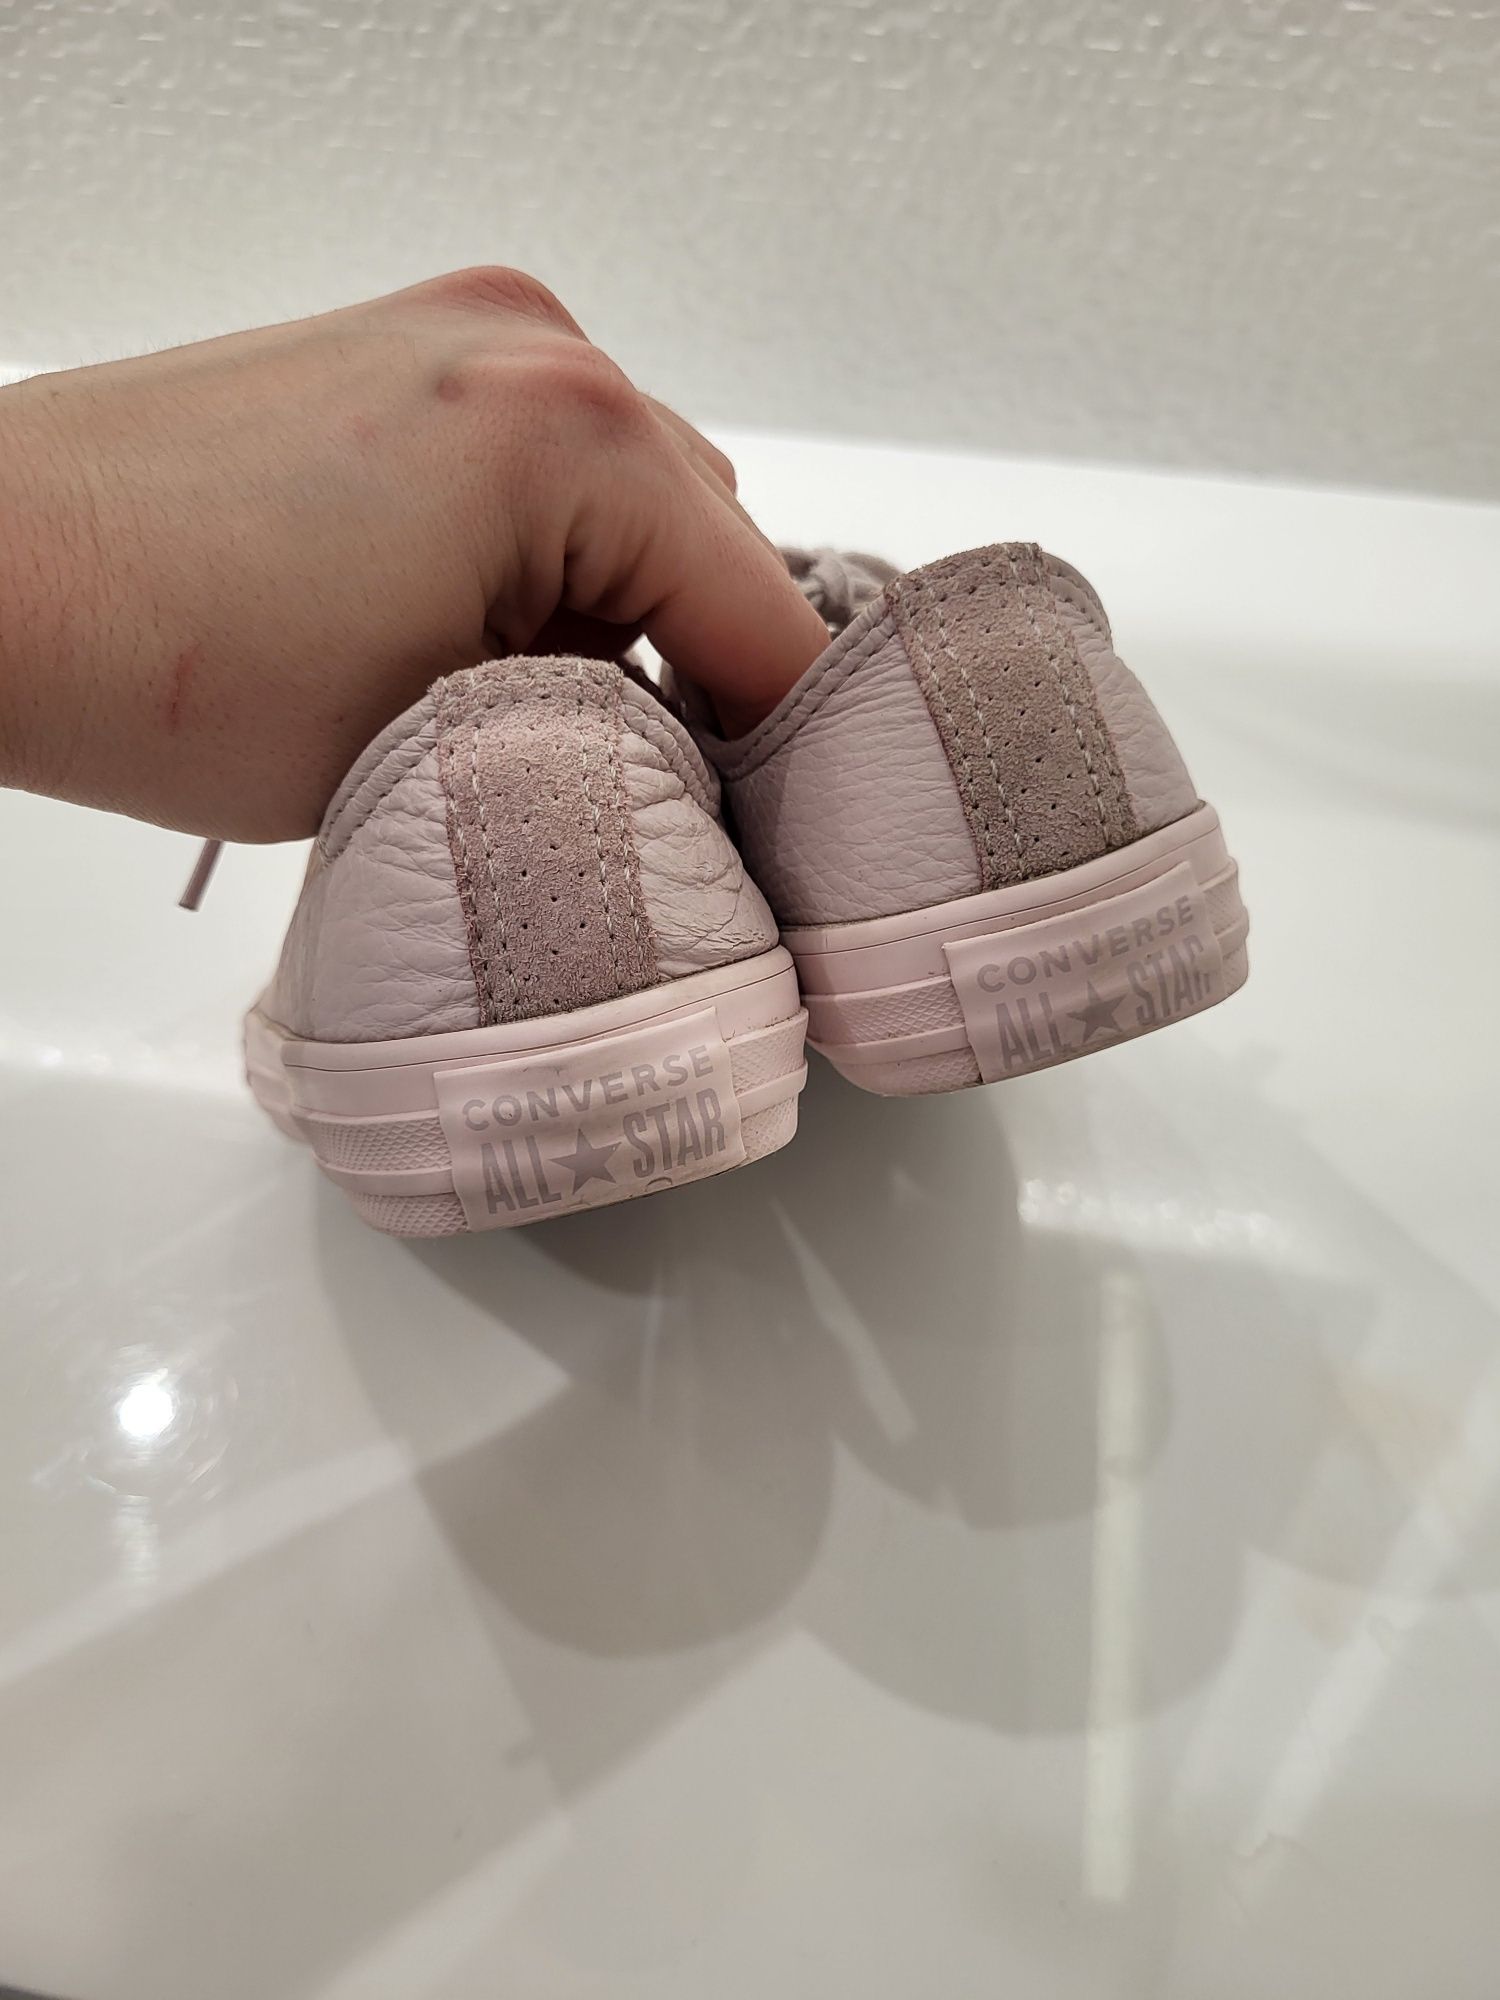 Buty Converse 31,5 skóra naturalna różowe róż trampki sneakersy